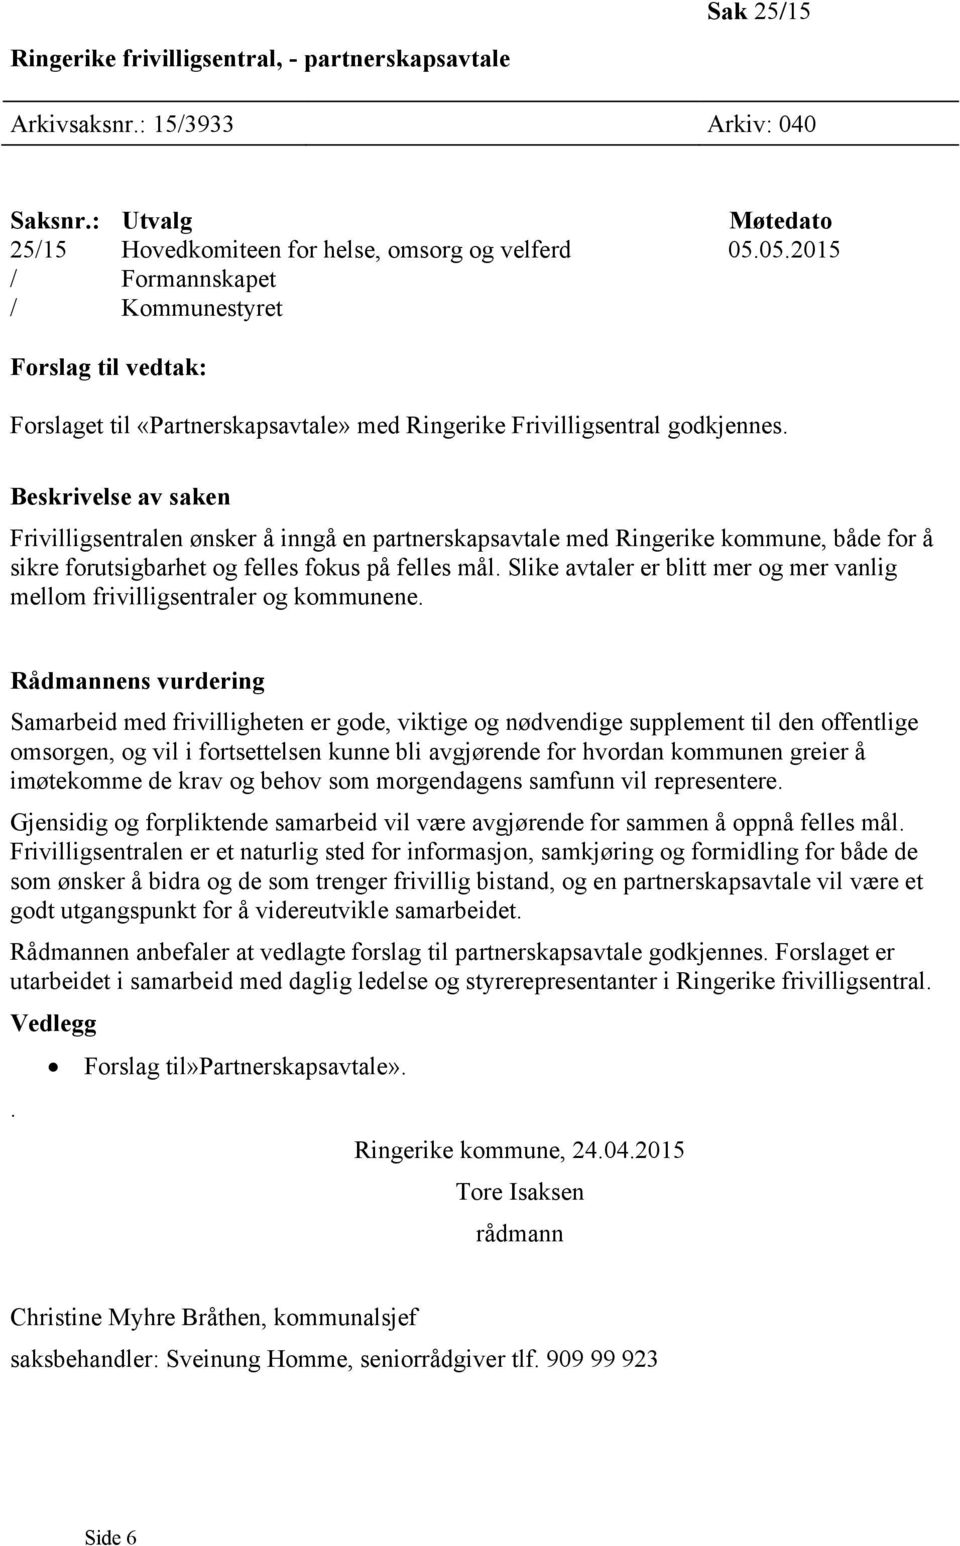 Beskrivelse av saken Frivilligsentralen ønsker å inngå en partnerskapsavtale med Ringerike kommune, både for å sikre forutsigbarhet og felles fokus på felles mål.